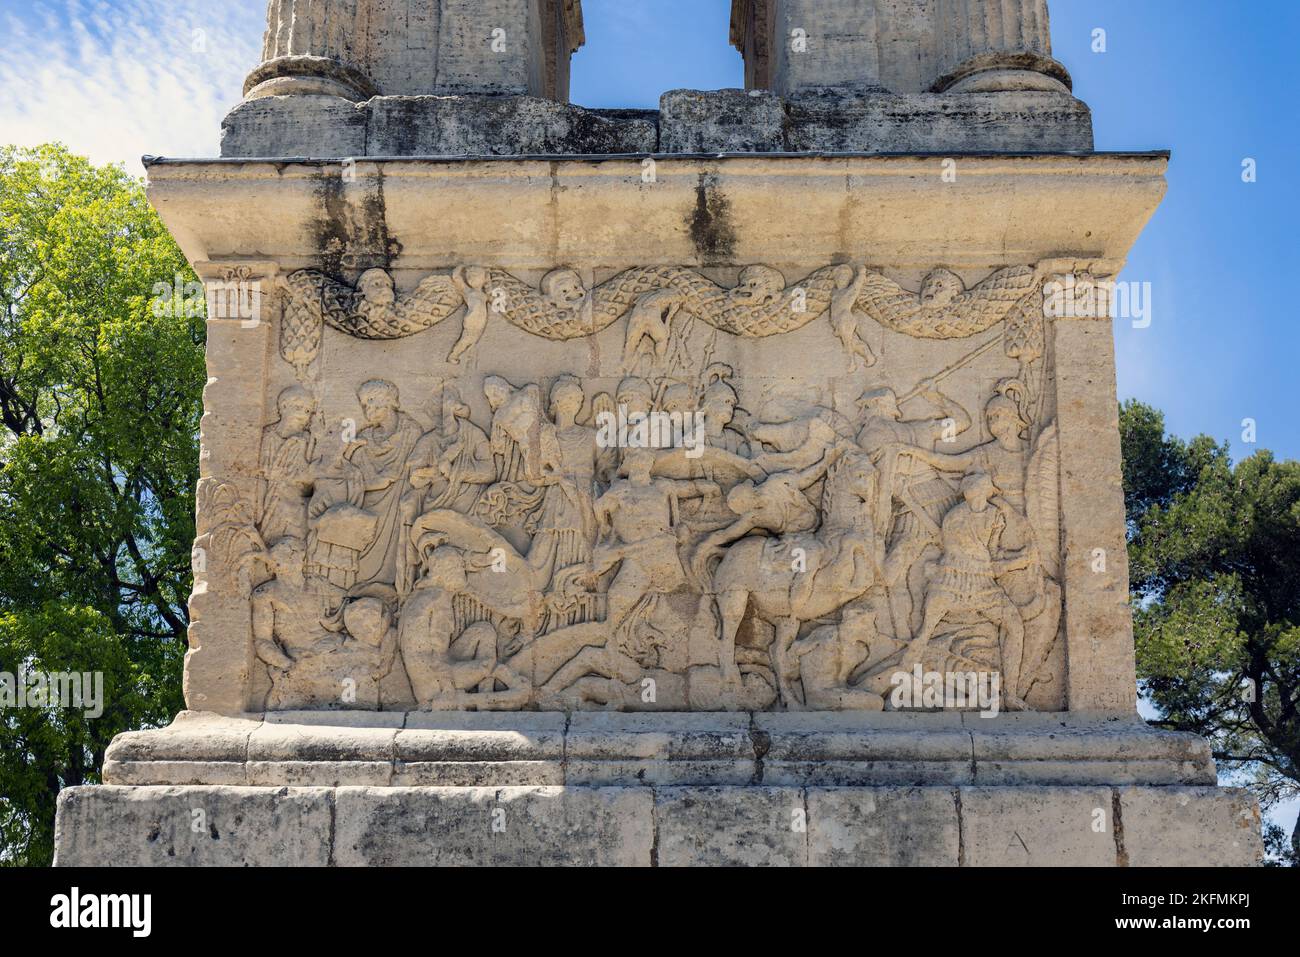 Saint-Rémy-de-Provence, Bouches-du-Rhône, Provence, Frankreich. Fries der Kampfszene auf dem Podium des Mausoleums. Die Struktur stammt aus der Zeit um 30 v. Chr. Stockfoto